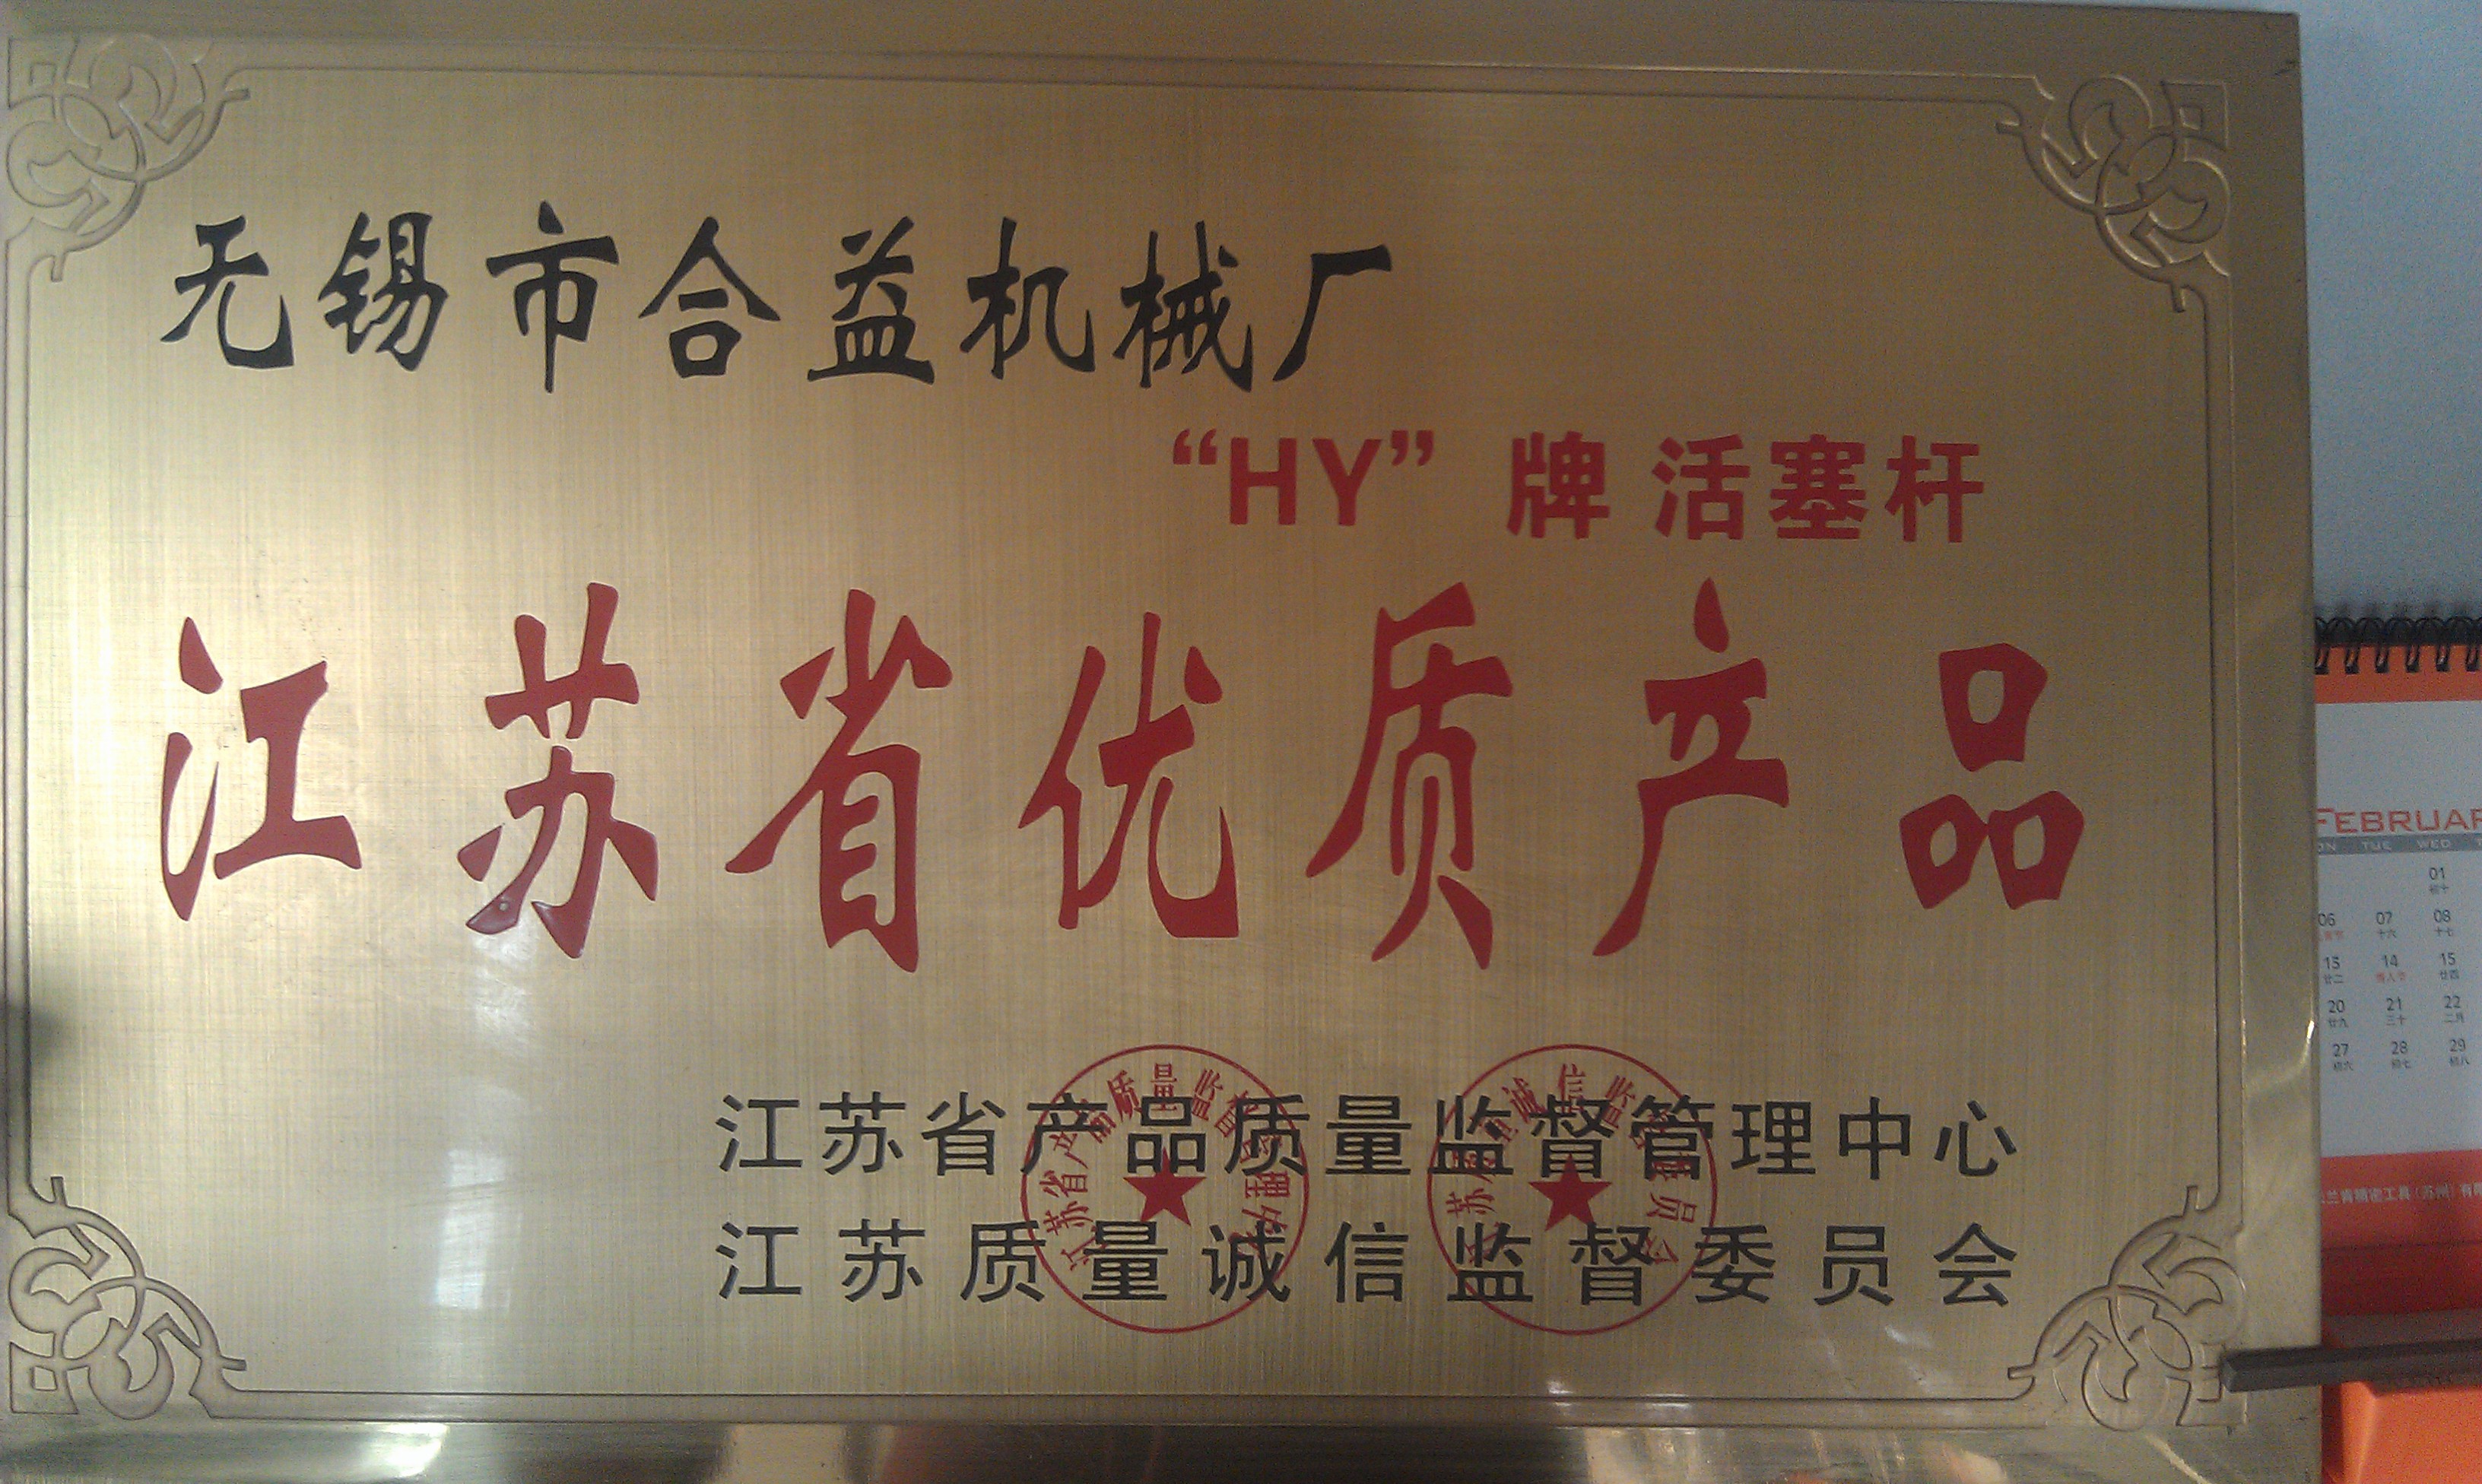 中国 Jiangsu New Heyi Machinery Co., Ltd 認証